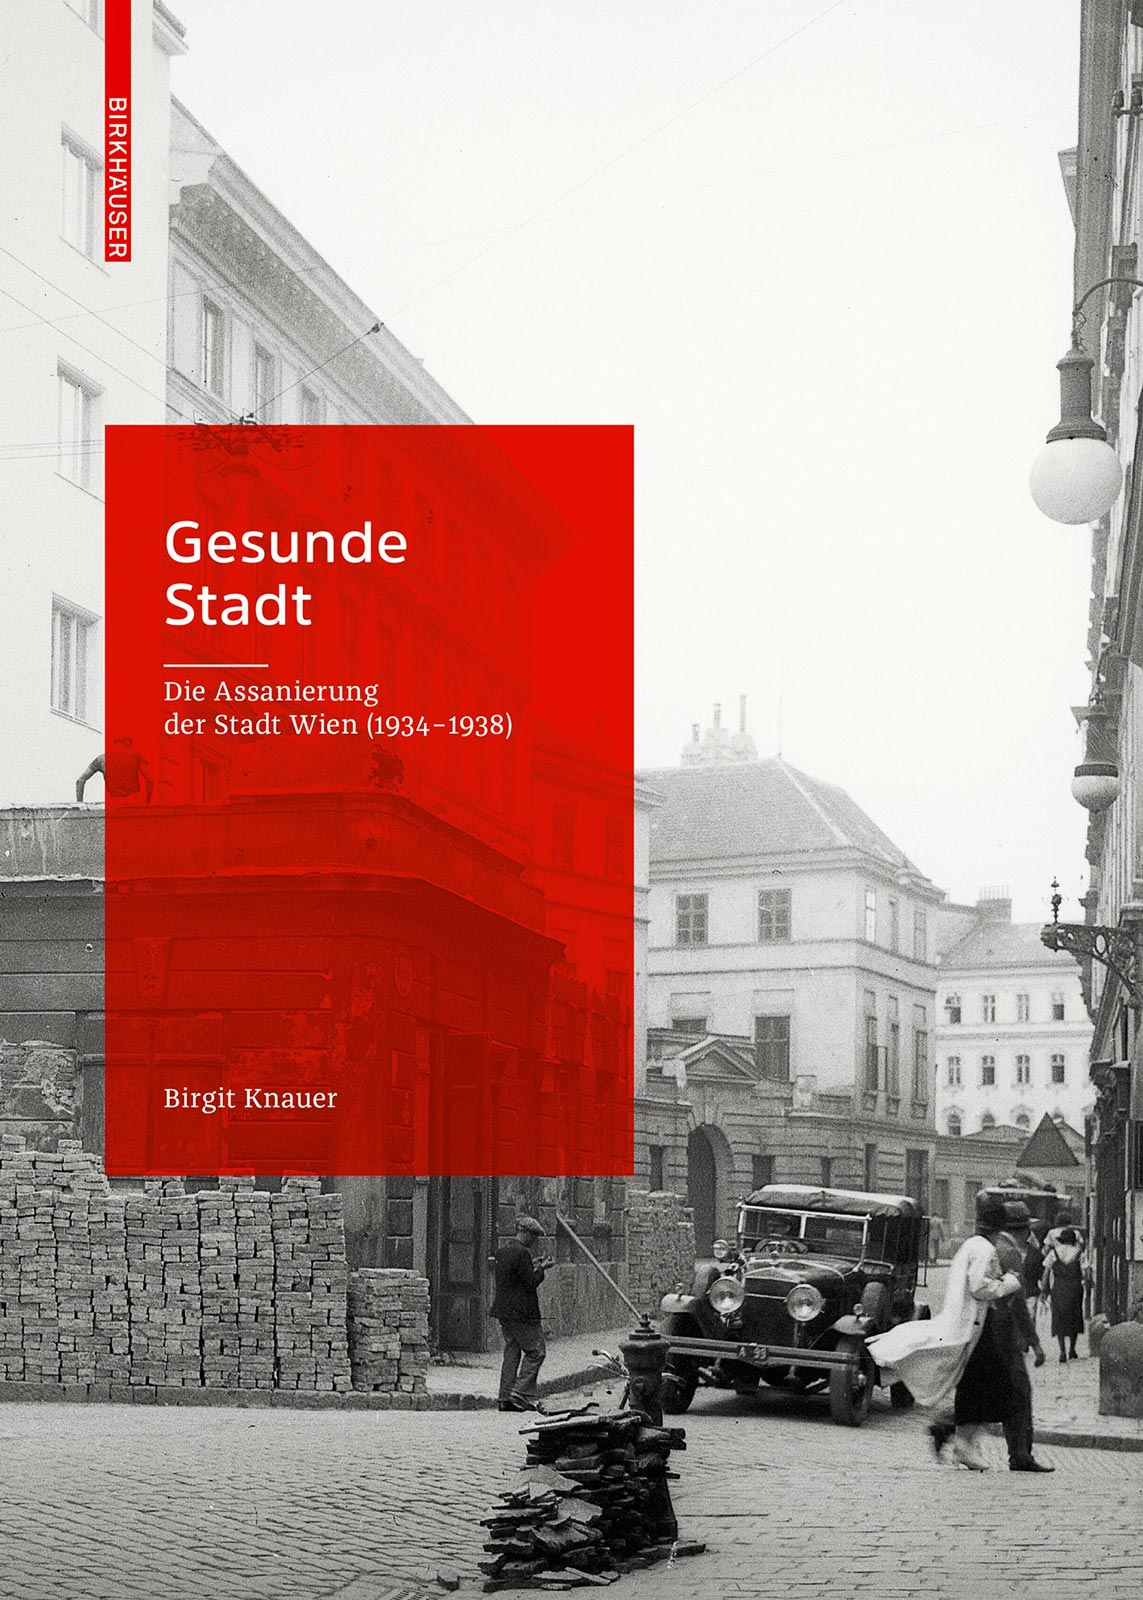 Abb. 2 Gesunde Stadt. Die Assanierung der Stadt Wien (1934-1938). (Quelle: Birkhäuser) 